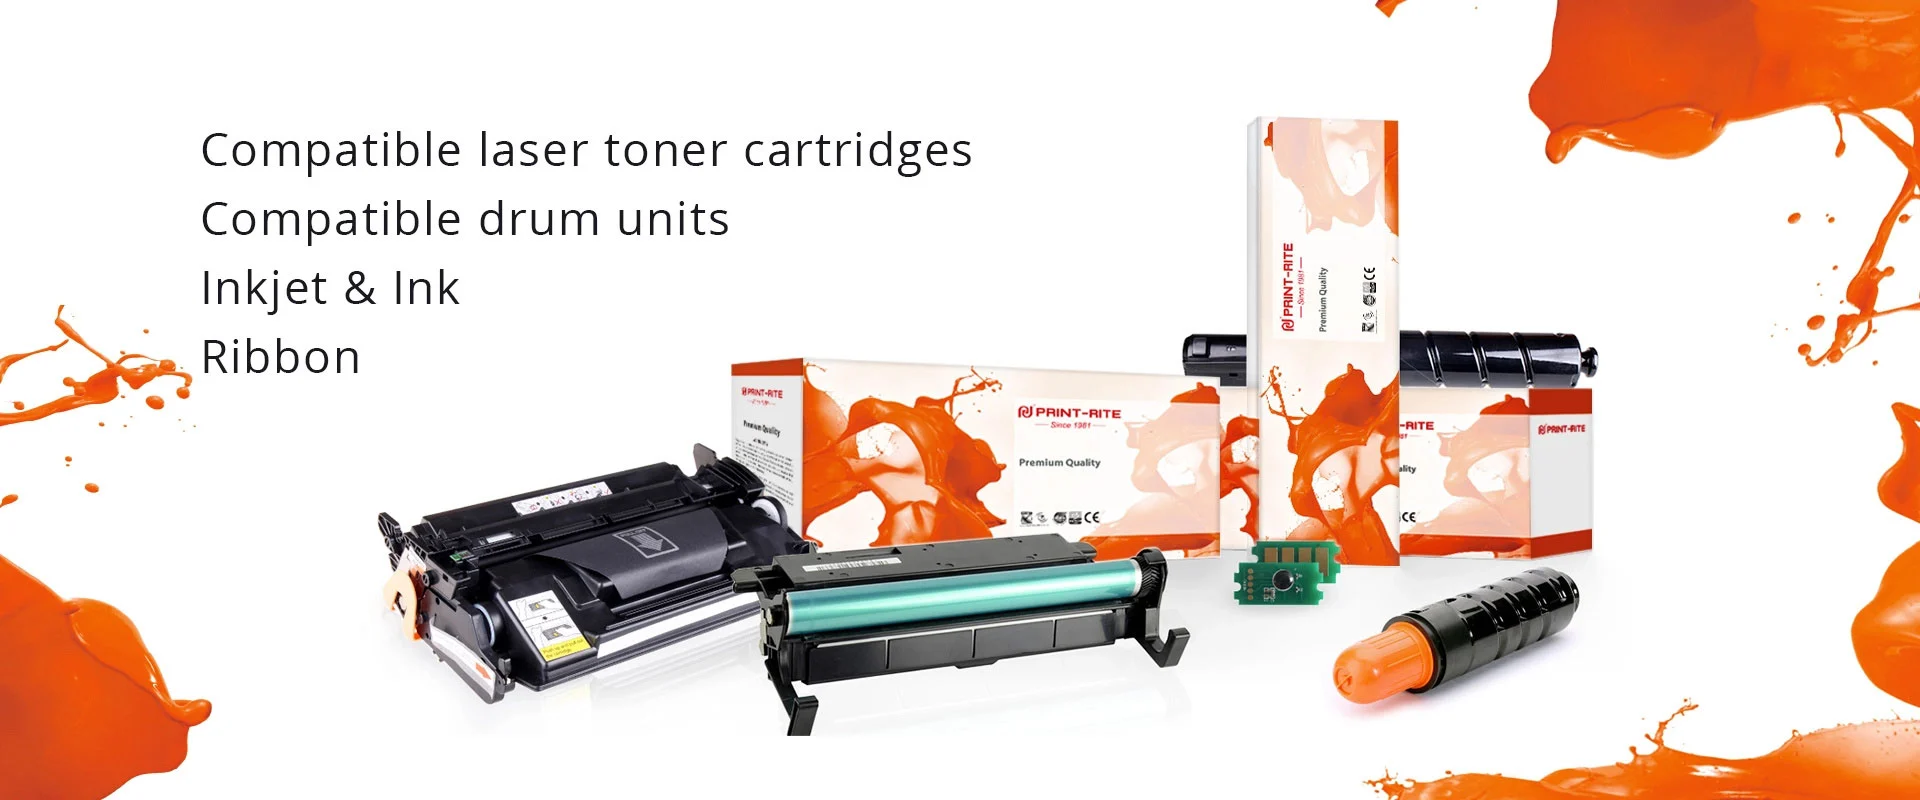 Compatible laser toner cartridges Compatible drum units Inkjet & Ink Ribbon